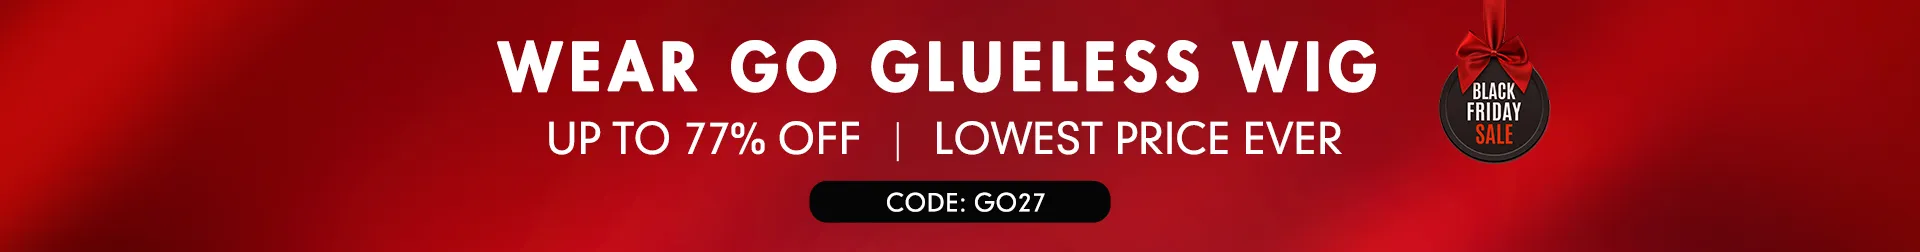 wear go glueless